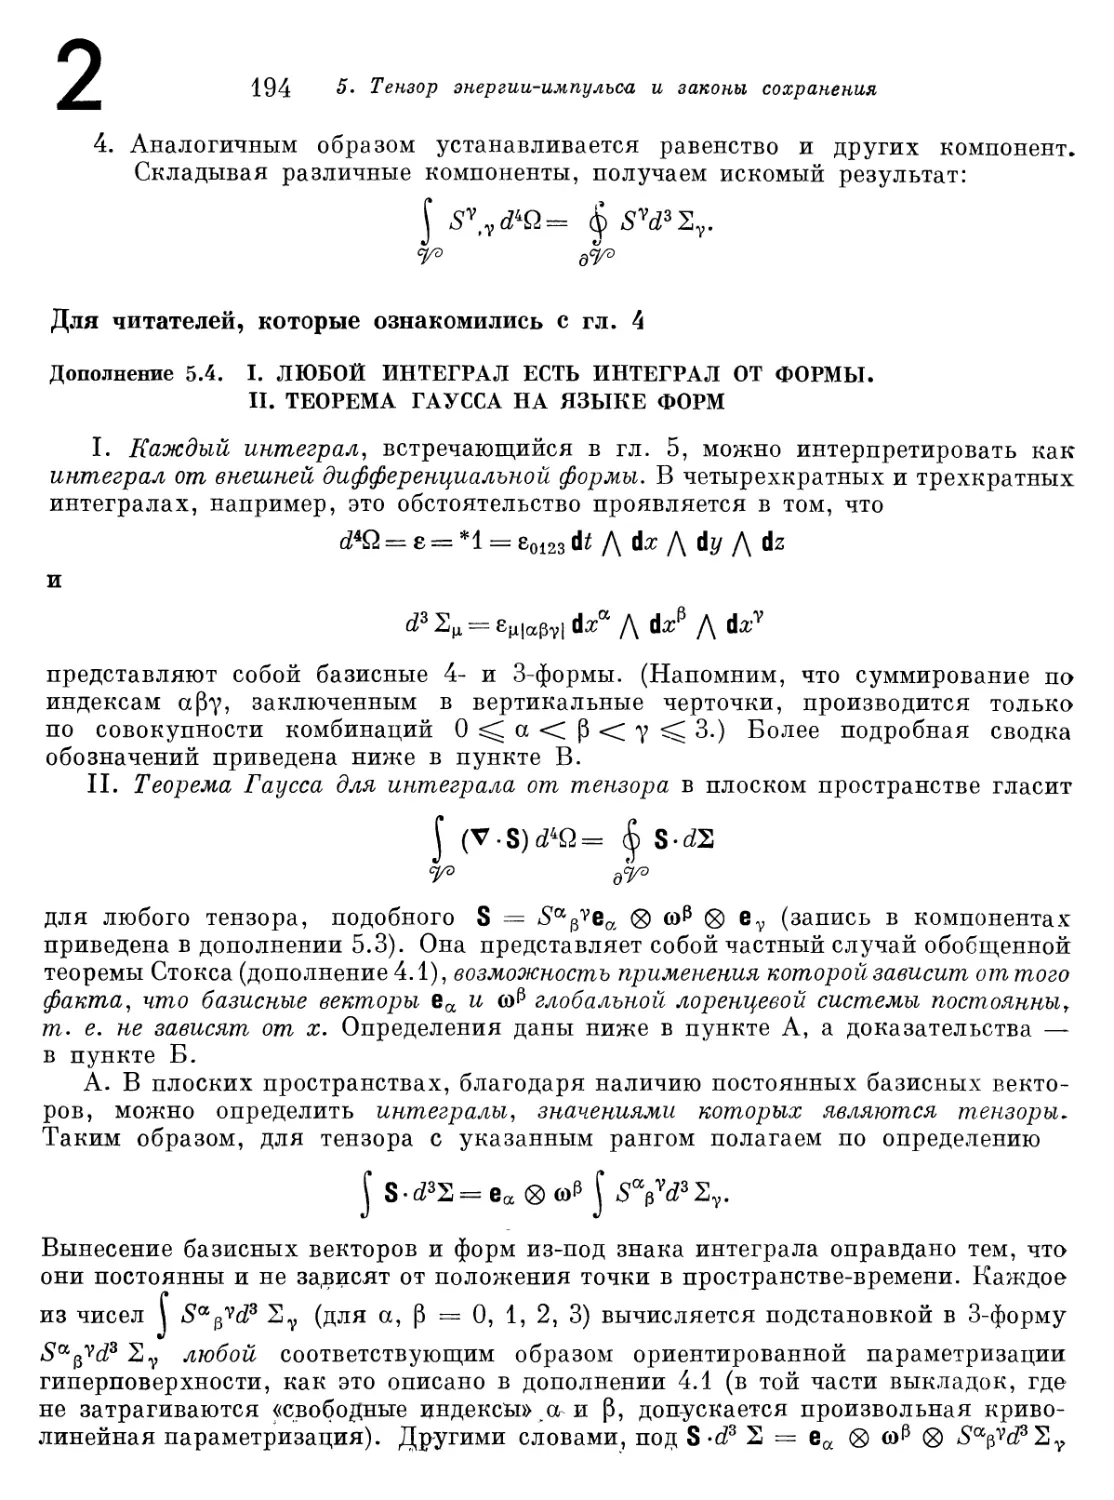 Дополнение 5.4.
II. Теорема Гаусса на языке форм